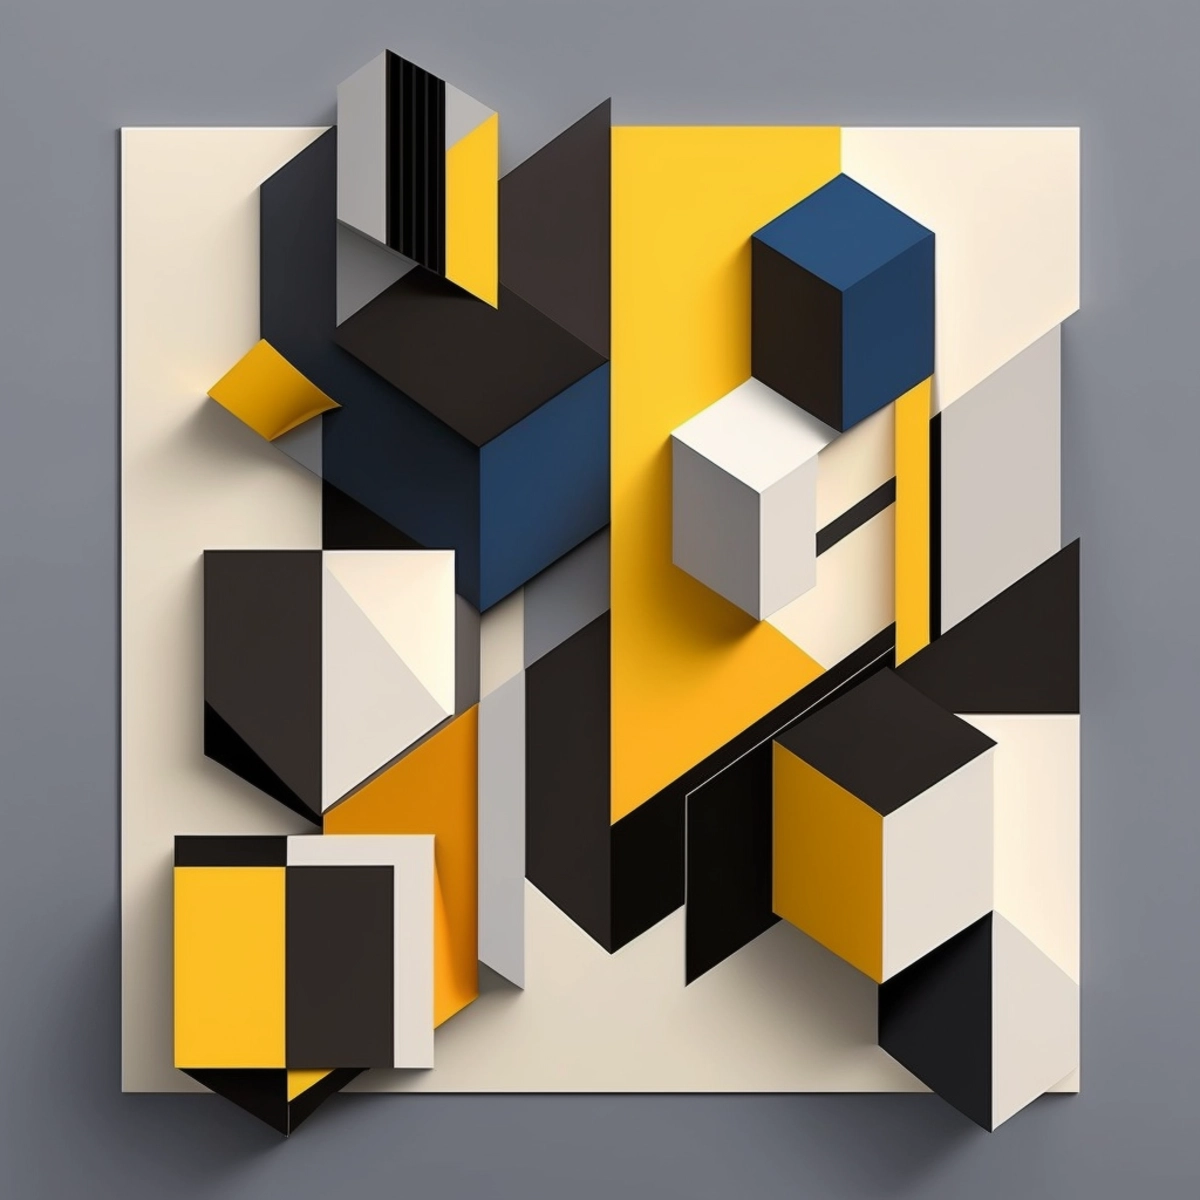 Une composition géométrique et minimaliste aux lignes entrecroisées et aux formes simples, dans une palette de couleurs audacieuses et contrastées